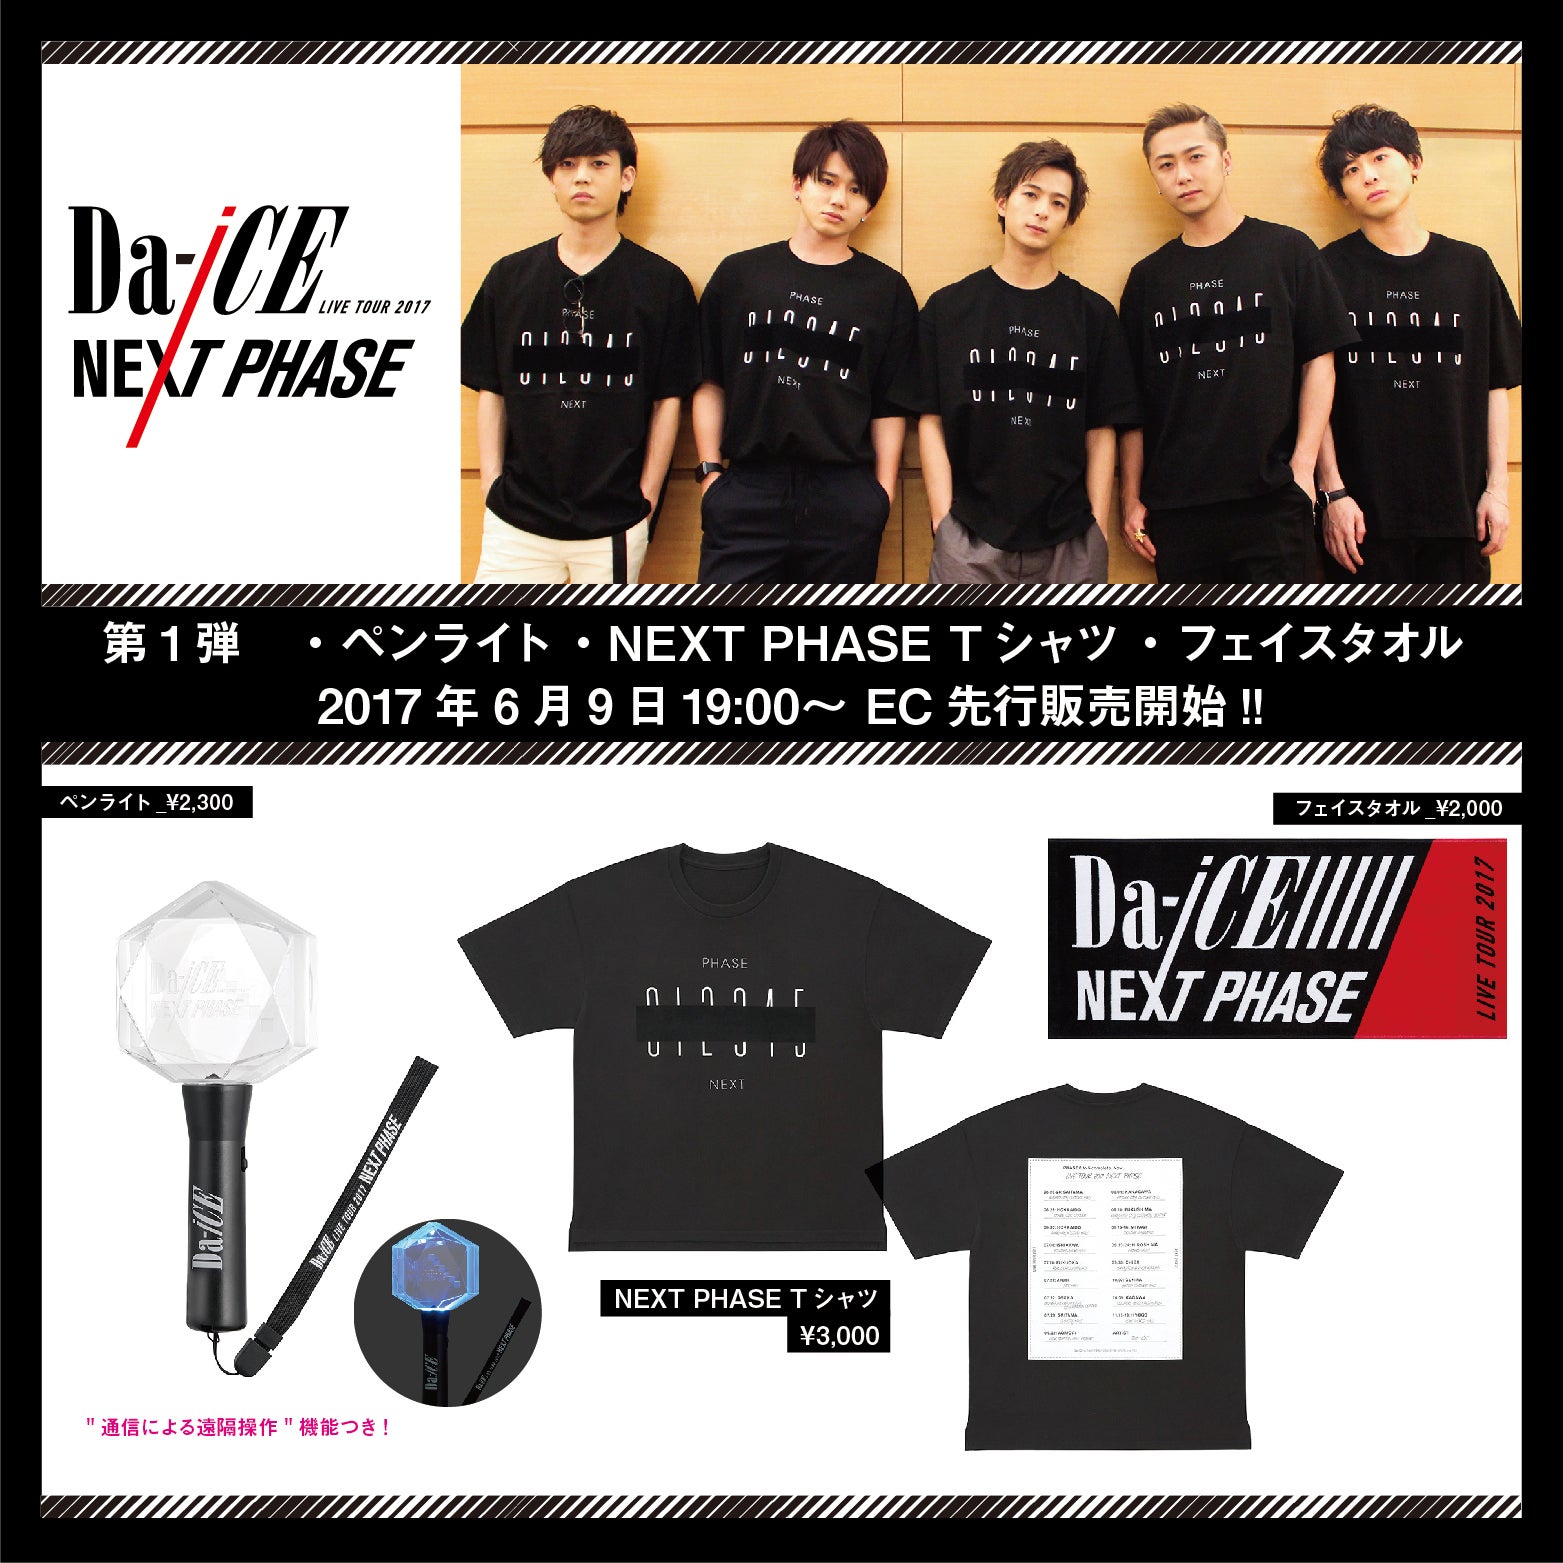 Da-iCE LIVE TOUR 2017 -NEXT PHASE-』ツアーグッズ発表!! | Da-iCE 